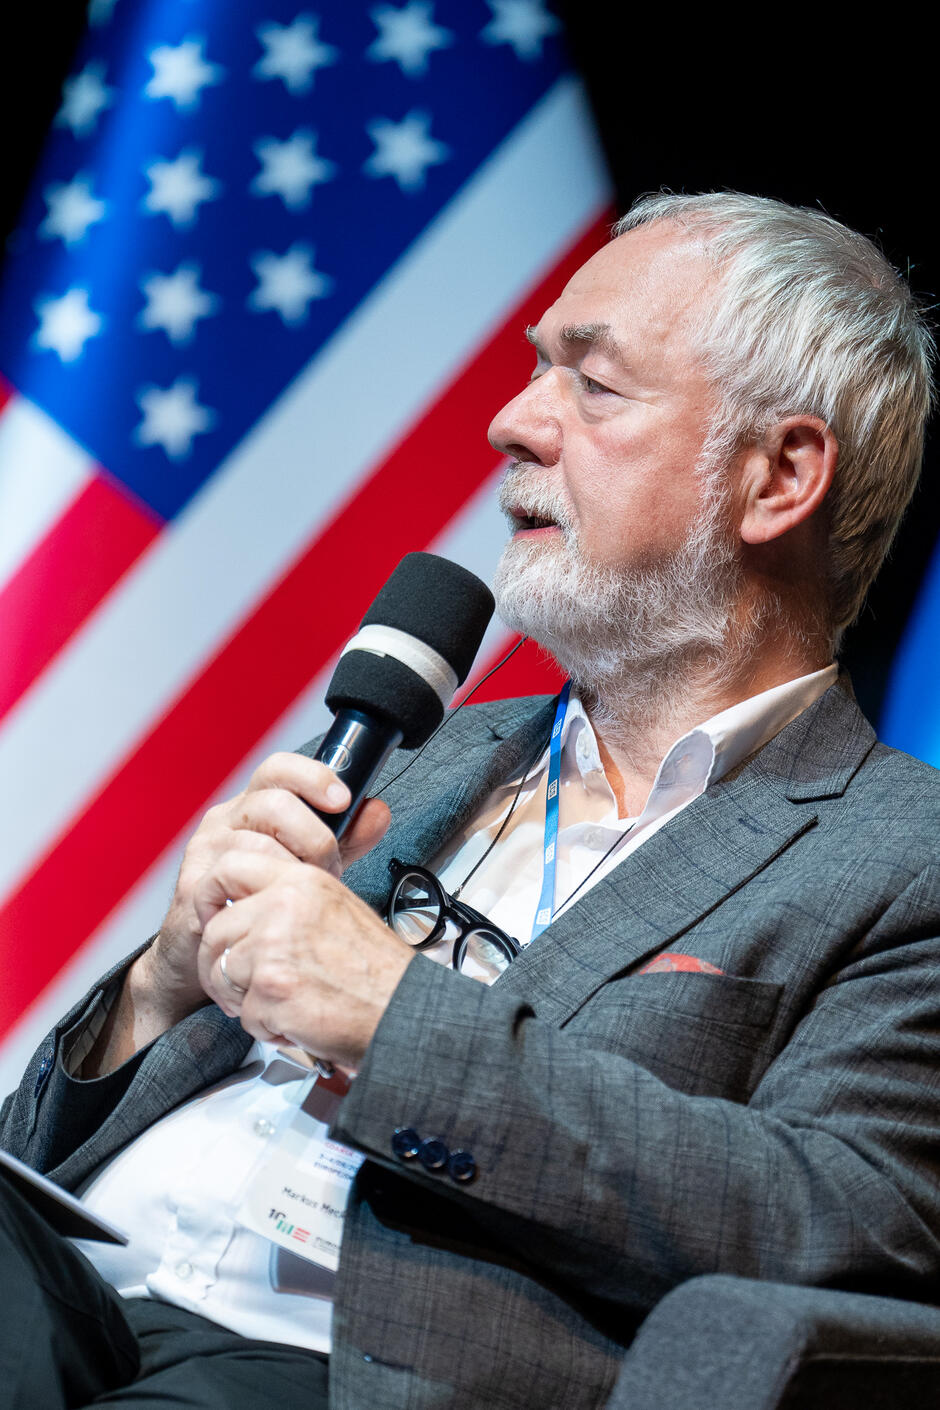 Na zdjęciu widzimy starszego mężczyznę z siwymi włosami i brodą, który trzyma mikrofon i przemawia, siedząc na tle flagi Stanów Zjednoczonych. Mężczyzna jest elegancko ubrany w szary garnitur i białą koszulę, a na szyi ma identyfikator konferencyjny.